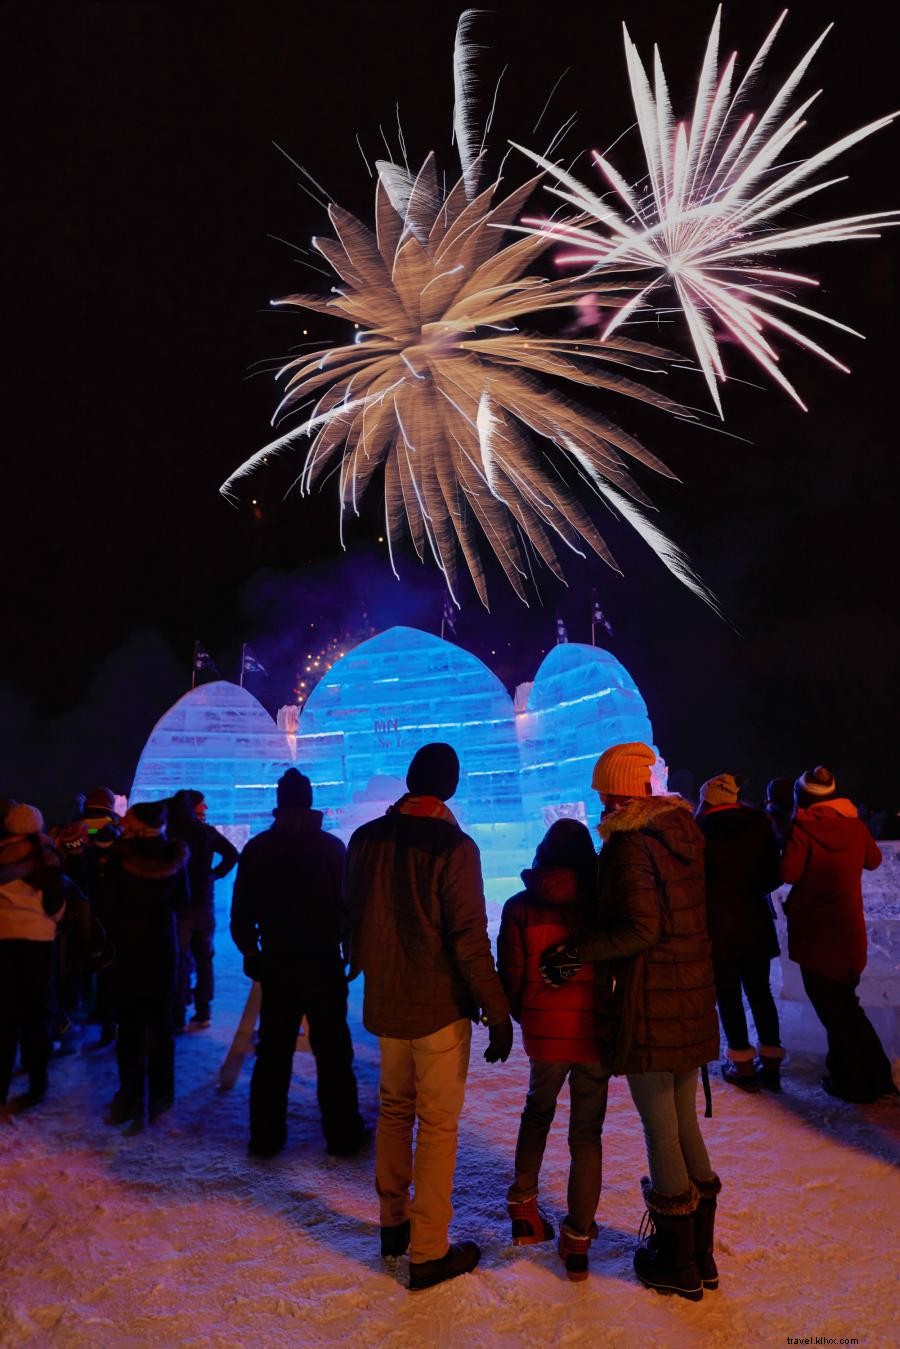 Encuentre diversión helada en estos festivales de invierno de Minnesota 